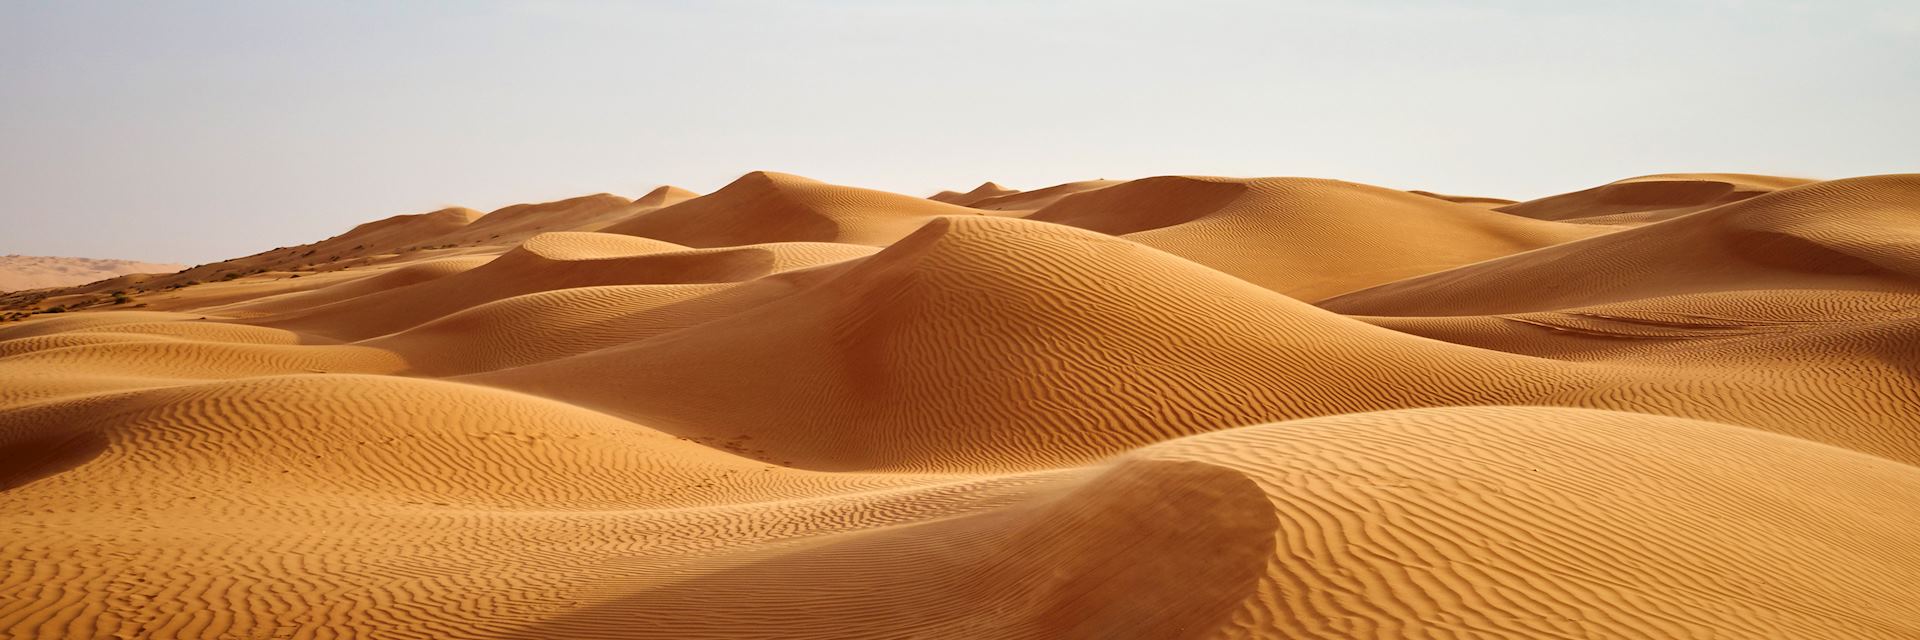 Desert dunes in Oman